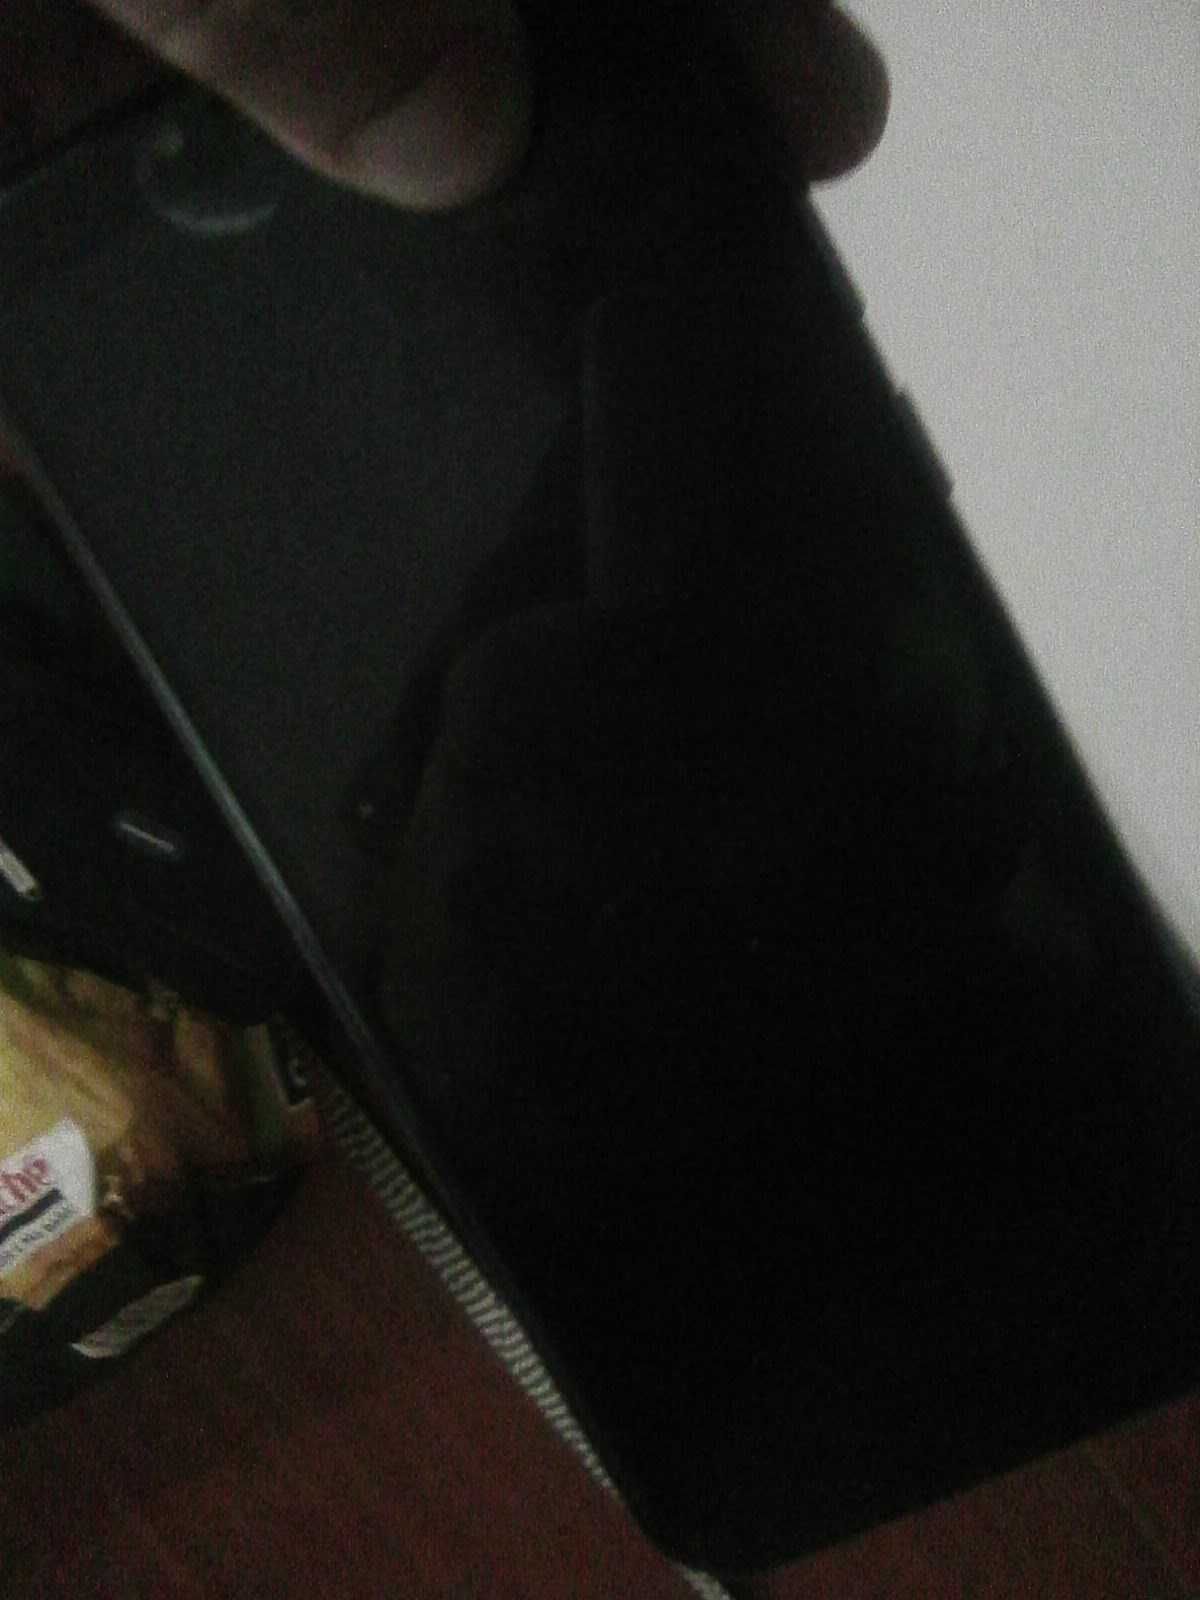 Nokia 52 e BlackBerry 8520 Alcatel Huwaei desbloqueados